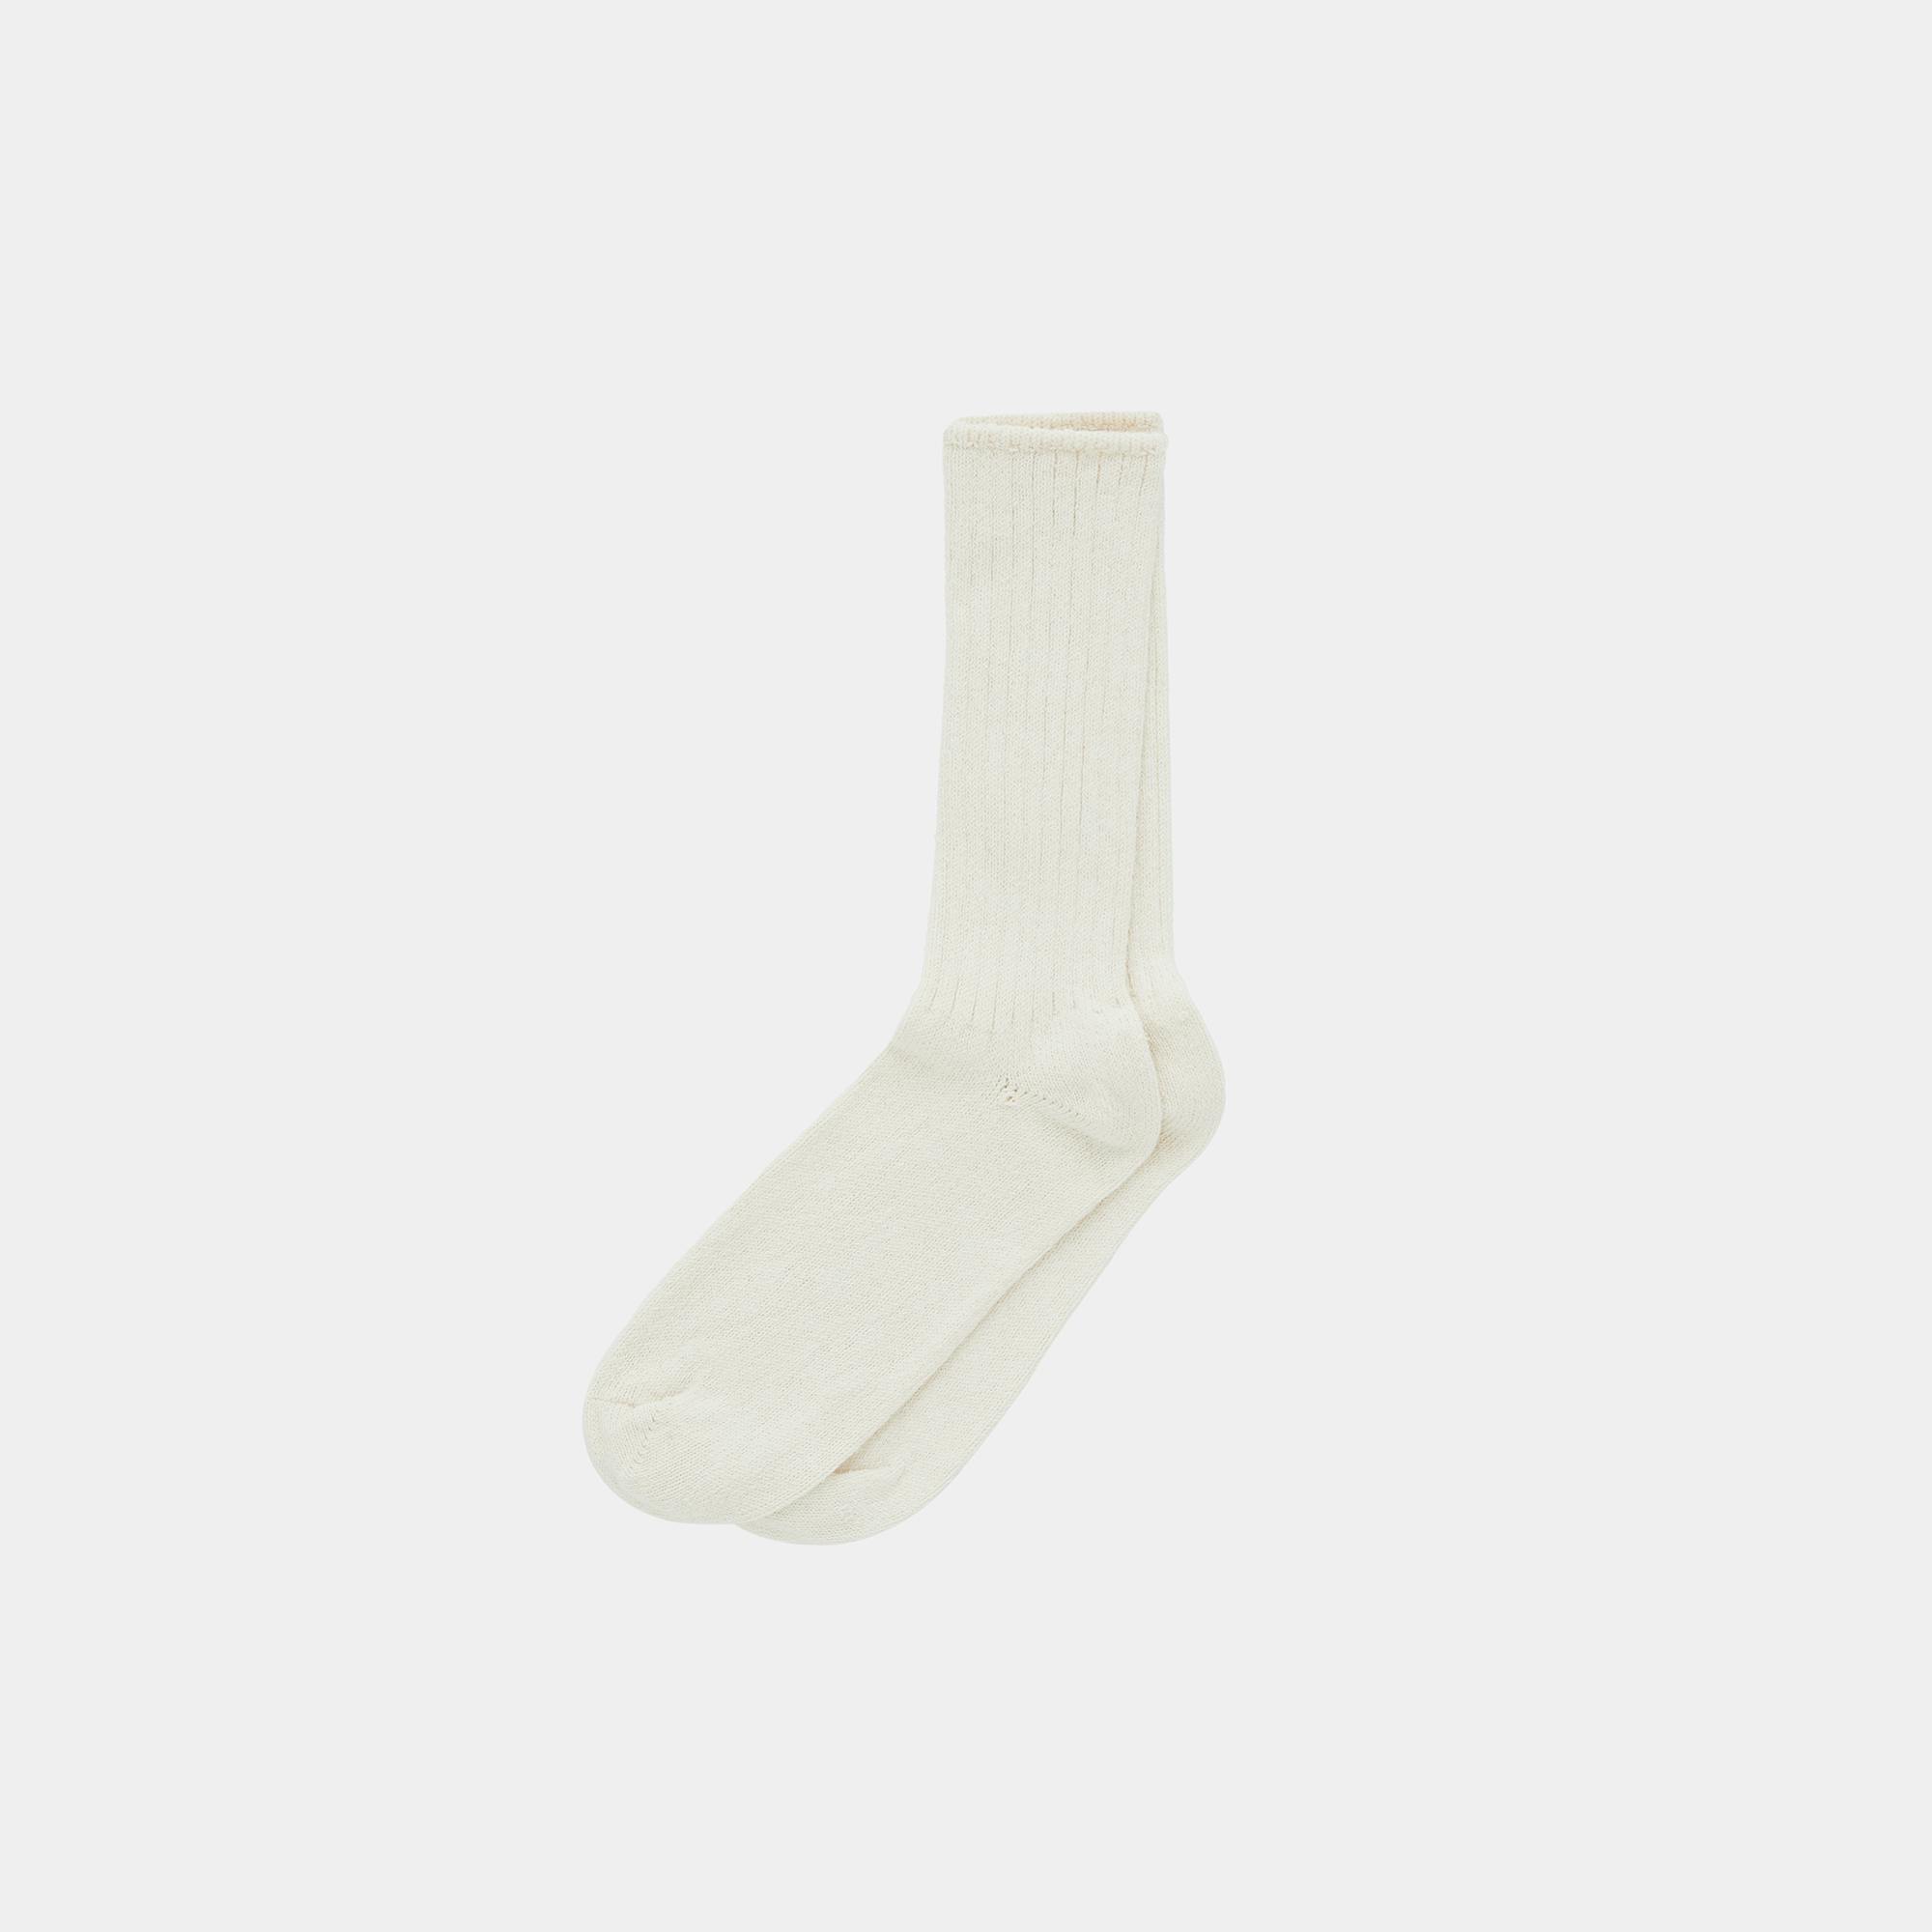 Crew Socks (Natural White) - Render - Back